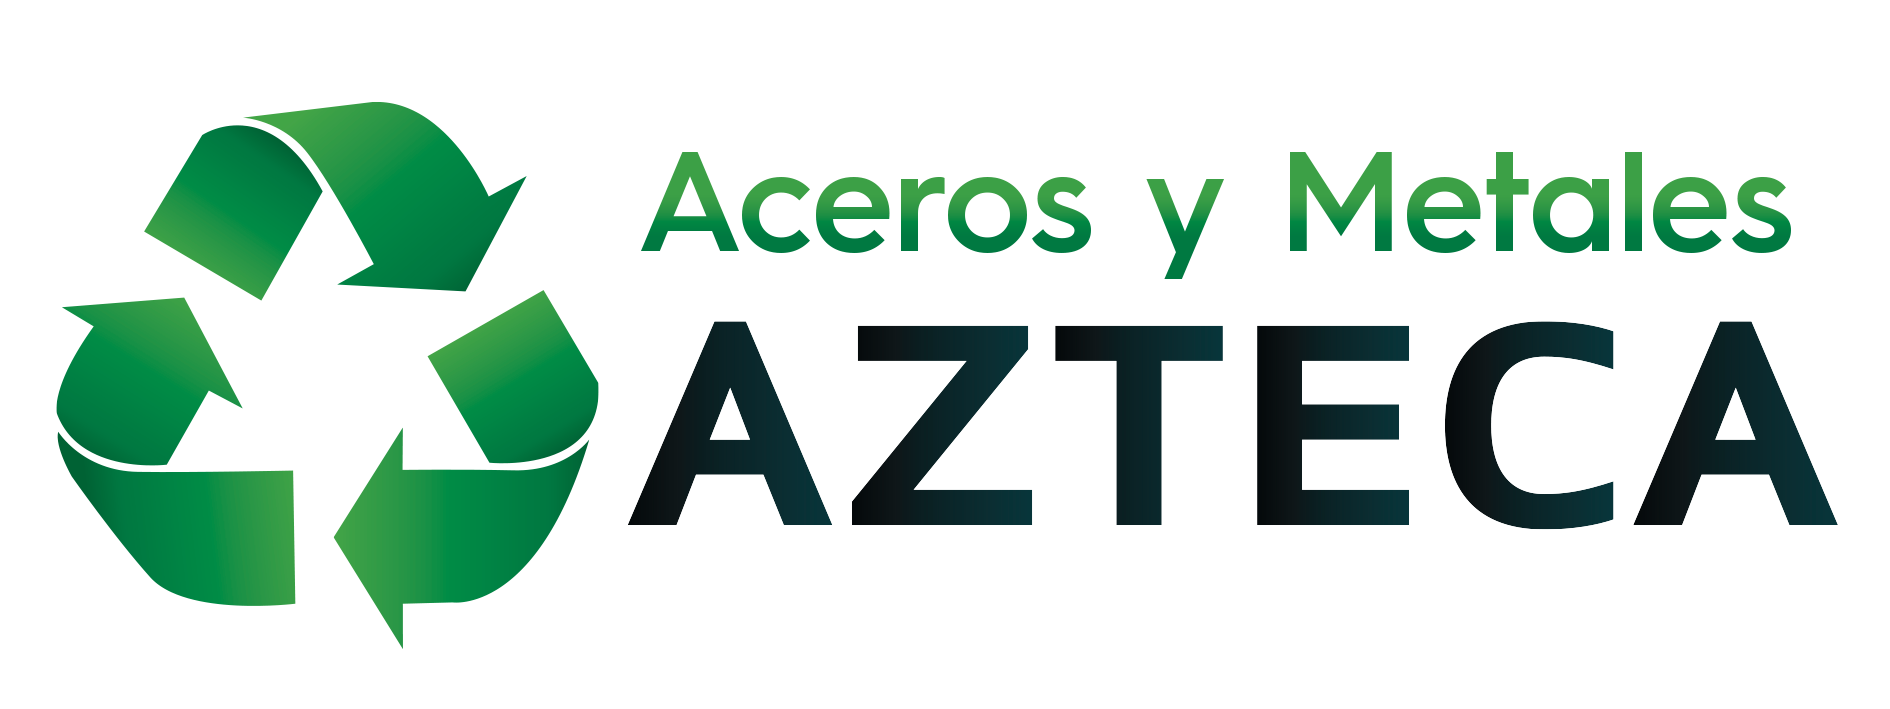 Aceros y Metales Azteca